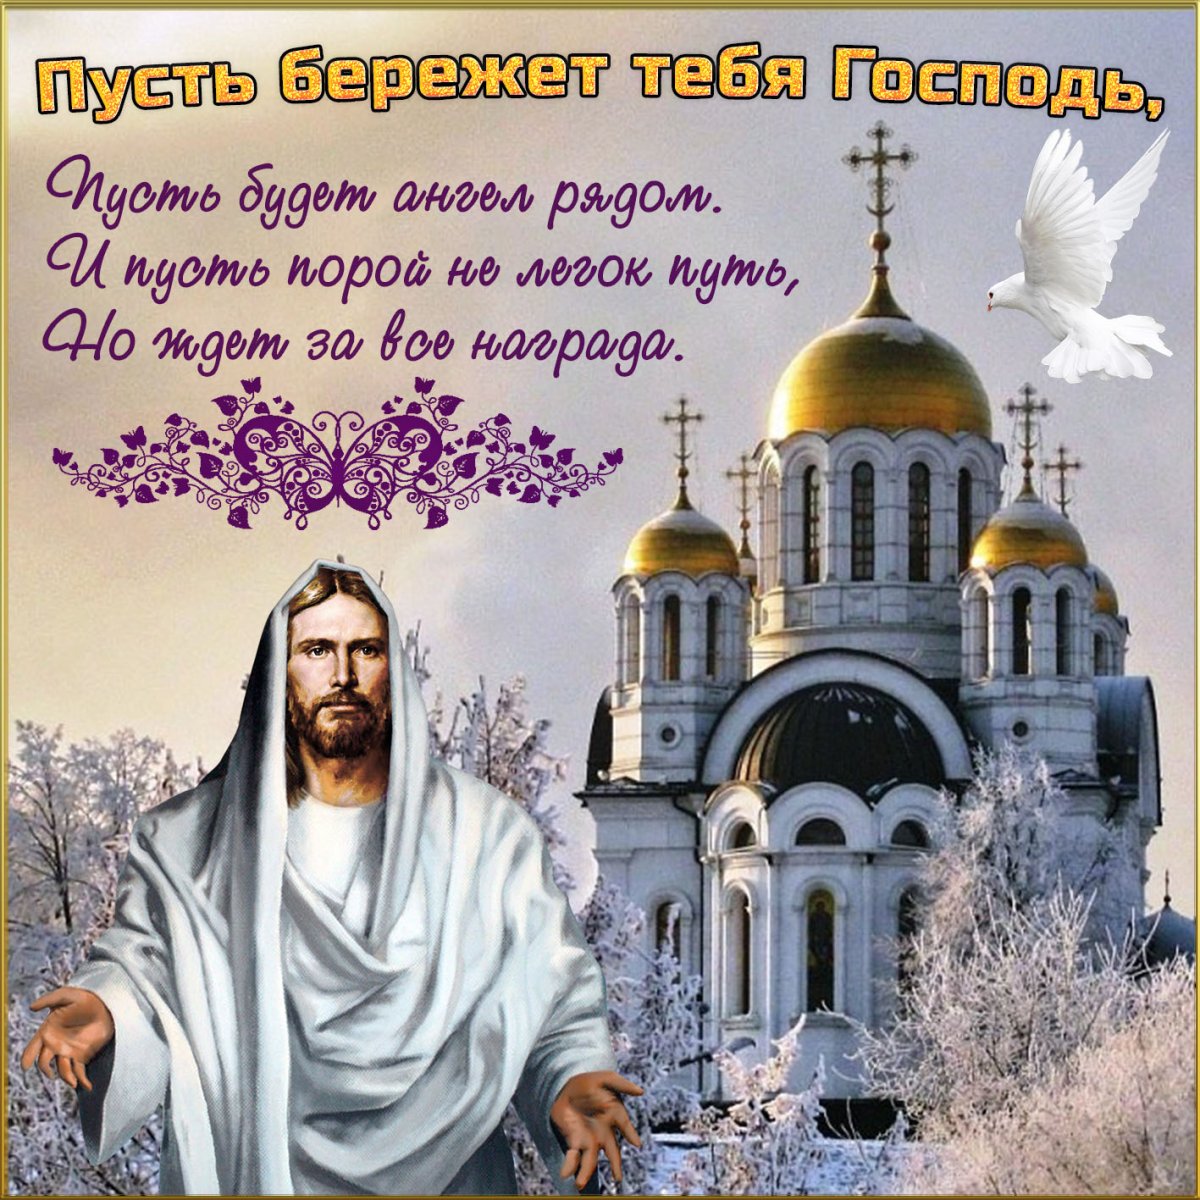 Как сделать рождественскую открытку своими руками - Православный журнал «Фома»